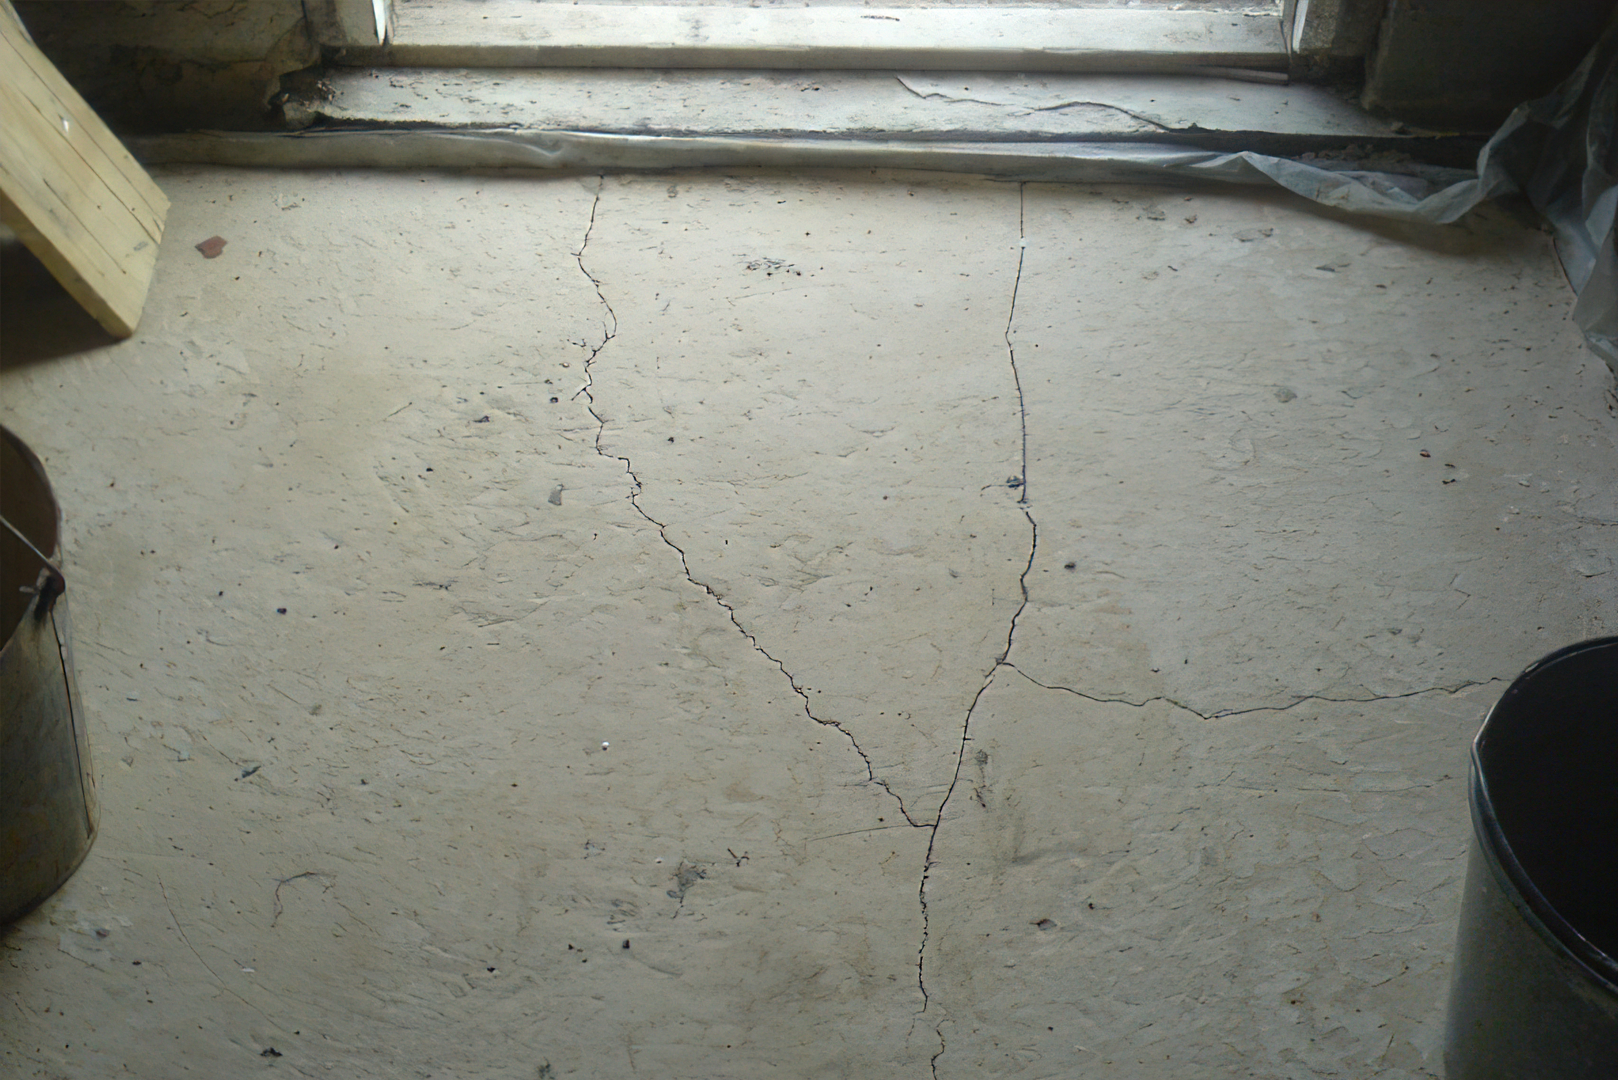 После полного высыхания. Цементно-Песчаная стяжка пола трещины. Цементная стяжка бухтит. Усадочные трещины на стяжке. Потрескалась стяжка пола.